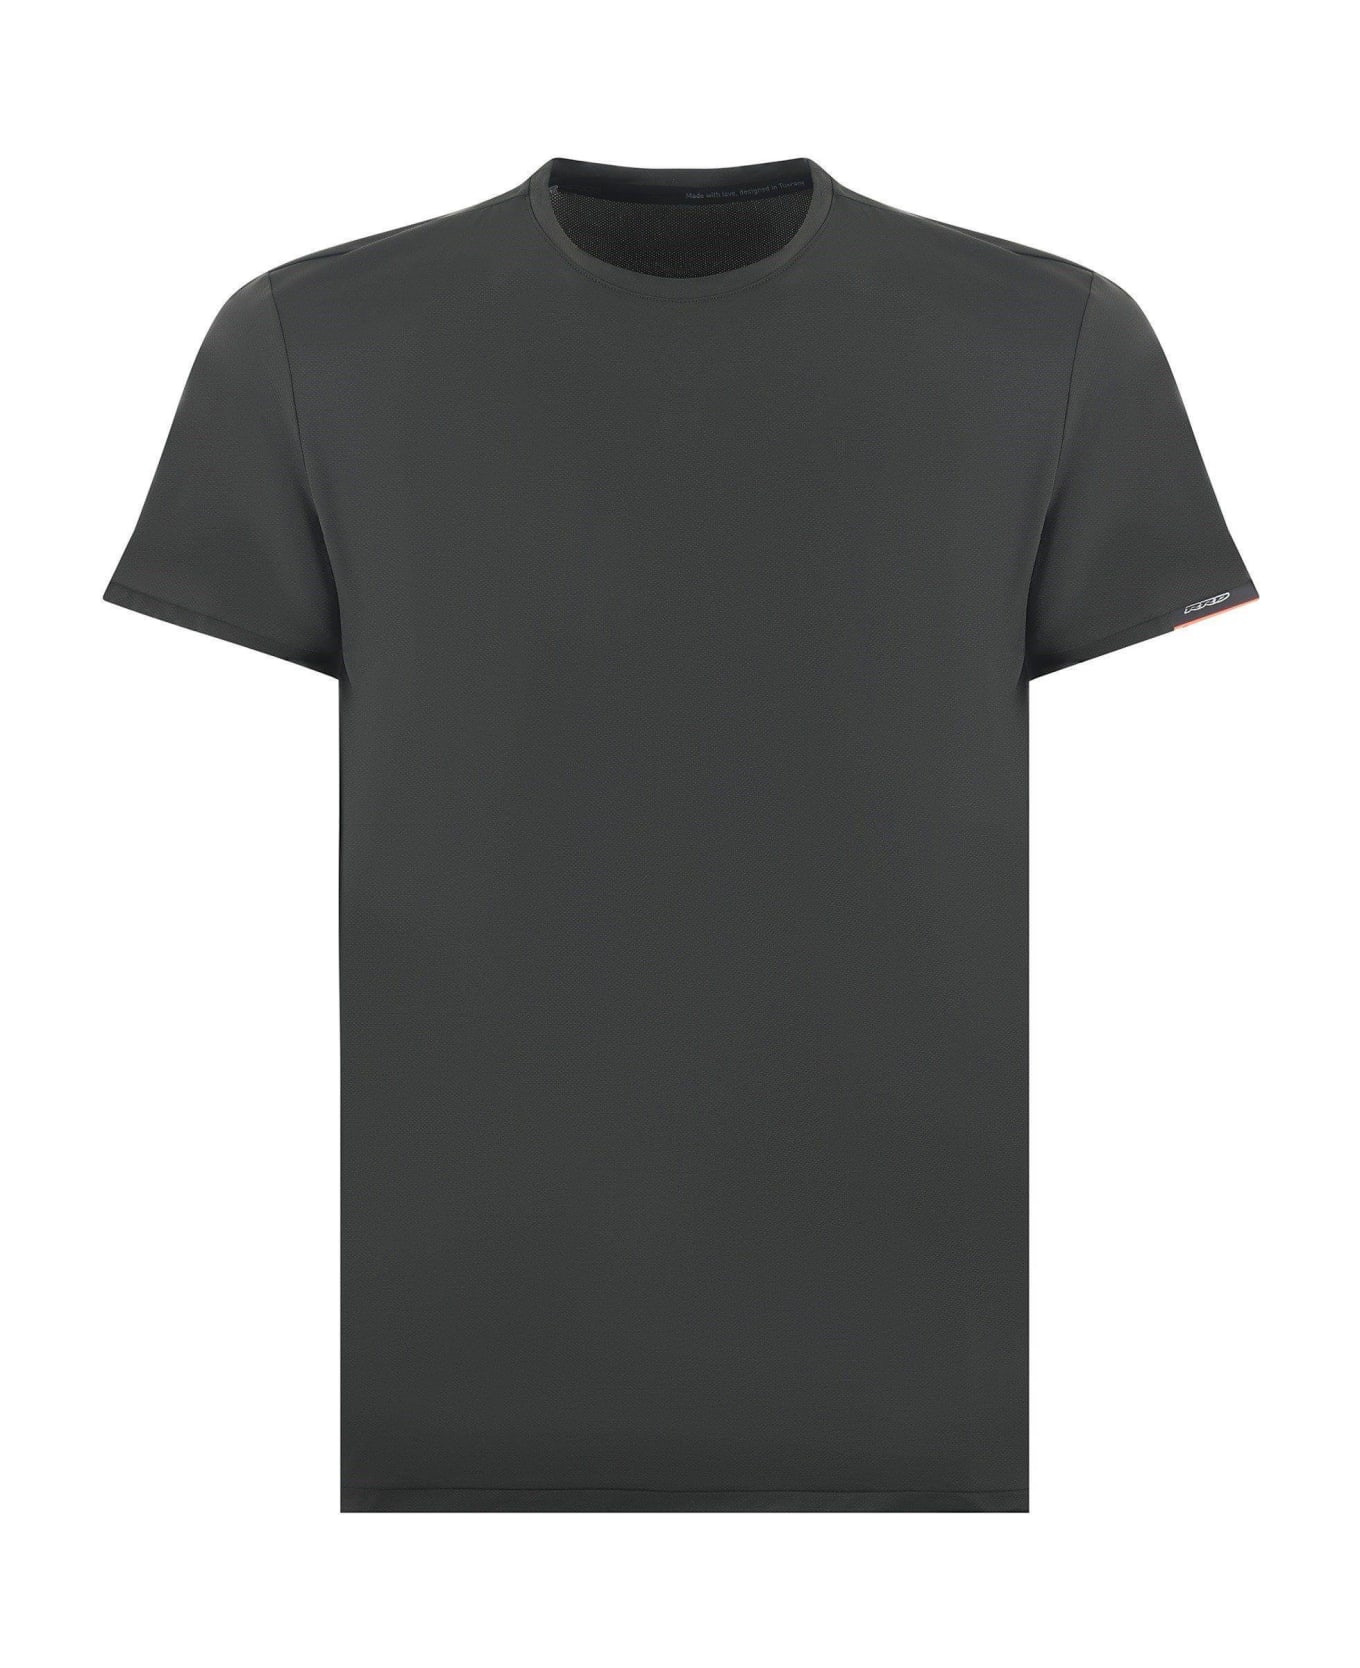 RRD - Roberto Ricci Design Rrd T-shirt - Verde scuro シャツ